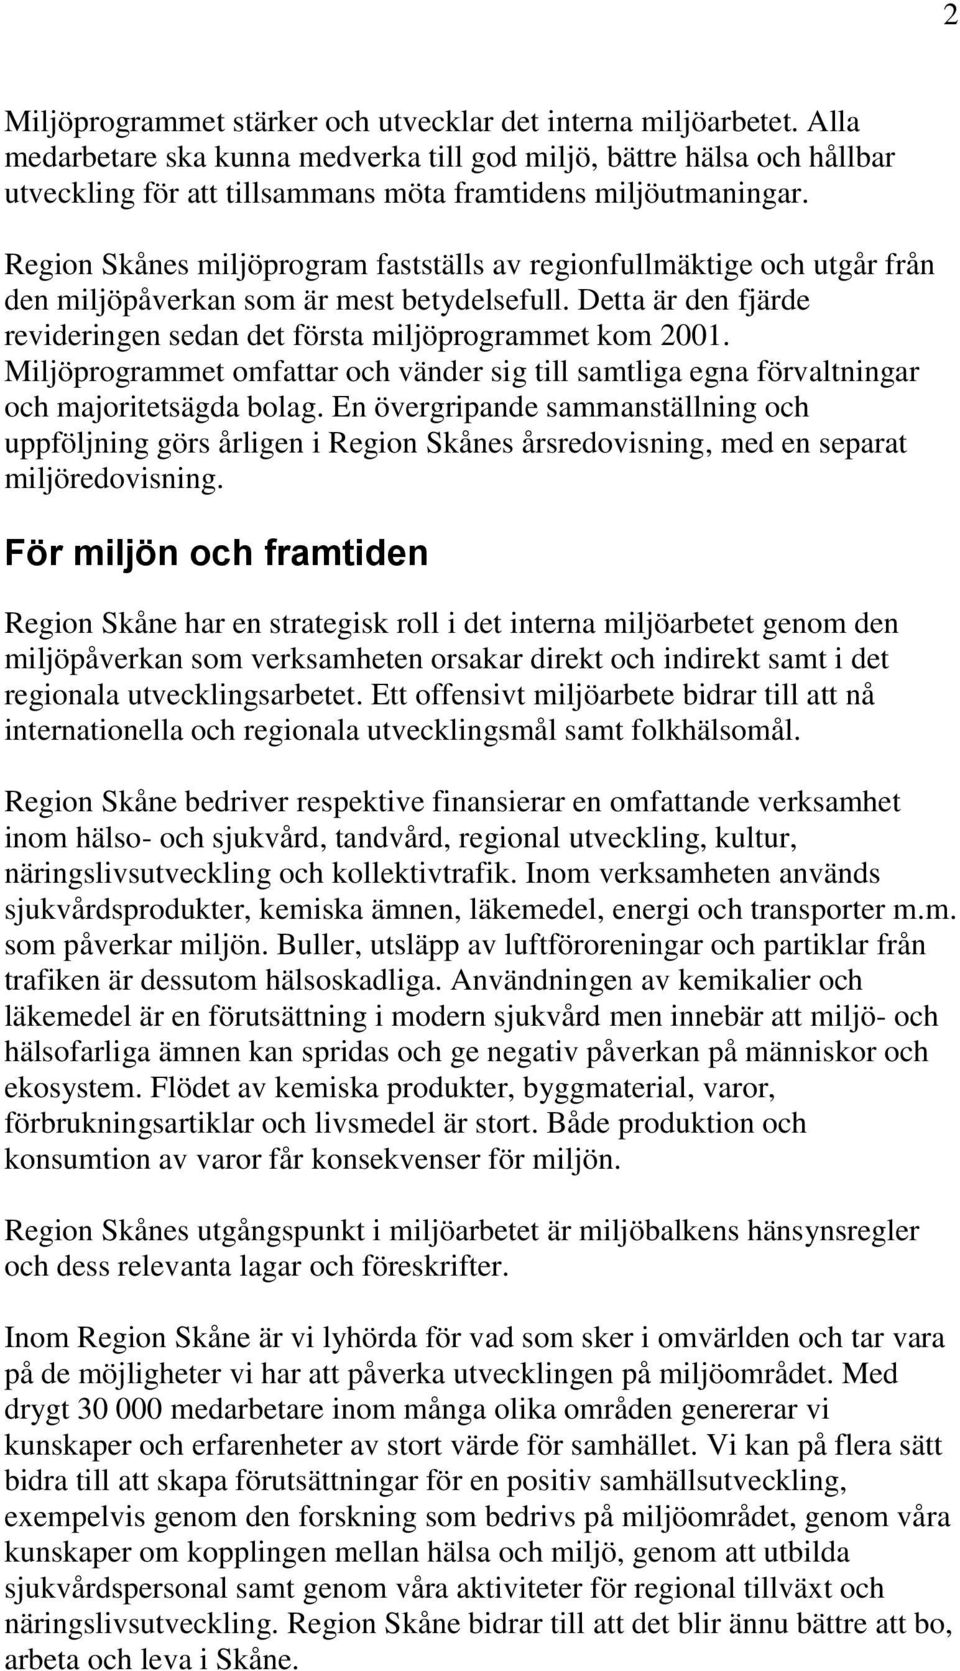 Region Skånes miljöprogram fastställs av regionfullmäktige och utgår från den miljöpåverkan som är mest betydelsefull. Detta är den fjärde revideringen sedan det första miljöprogrammet kom 2001.